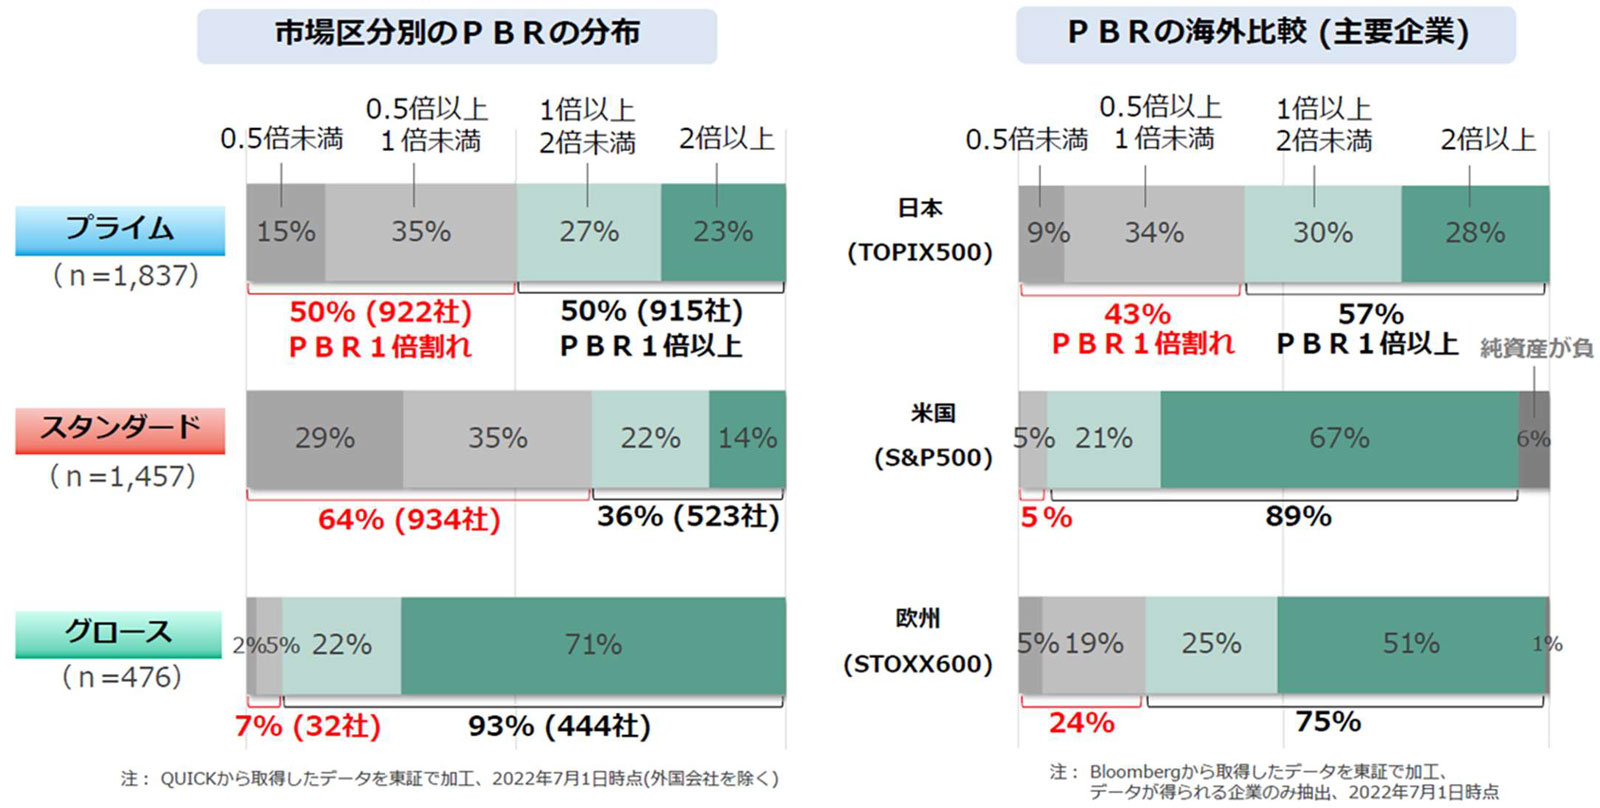 日本における市場区分別のPBRの比較および欧米市場との比較